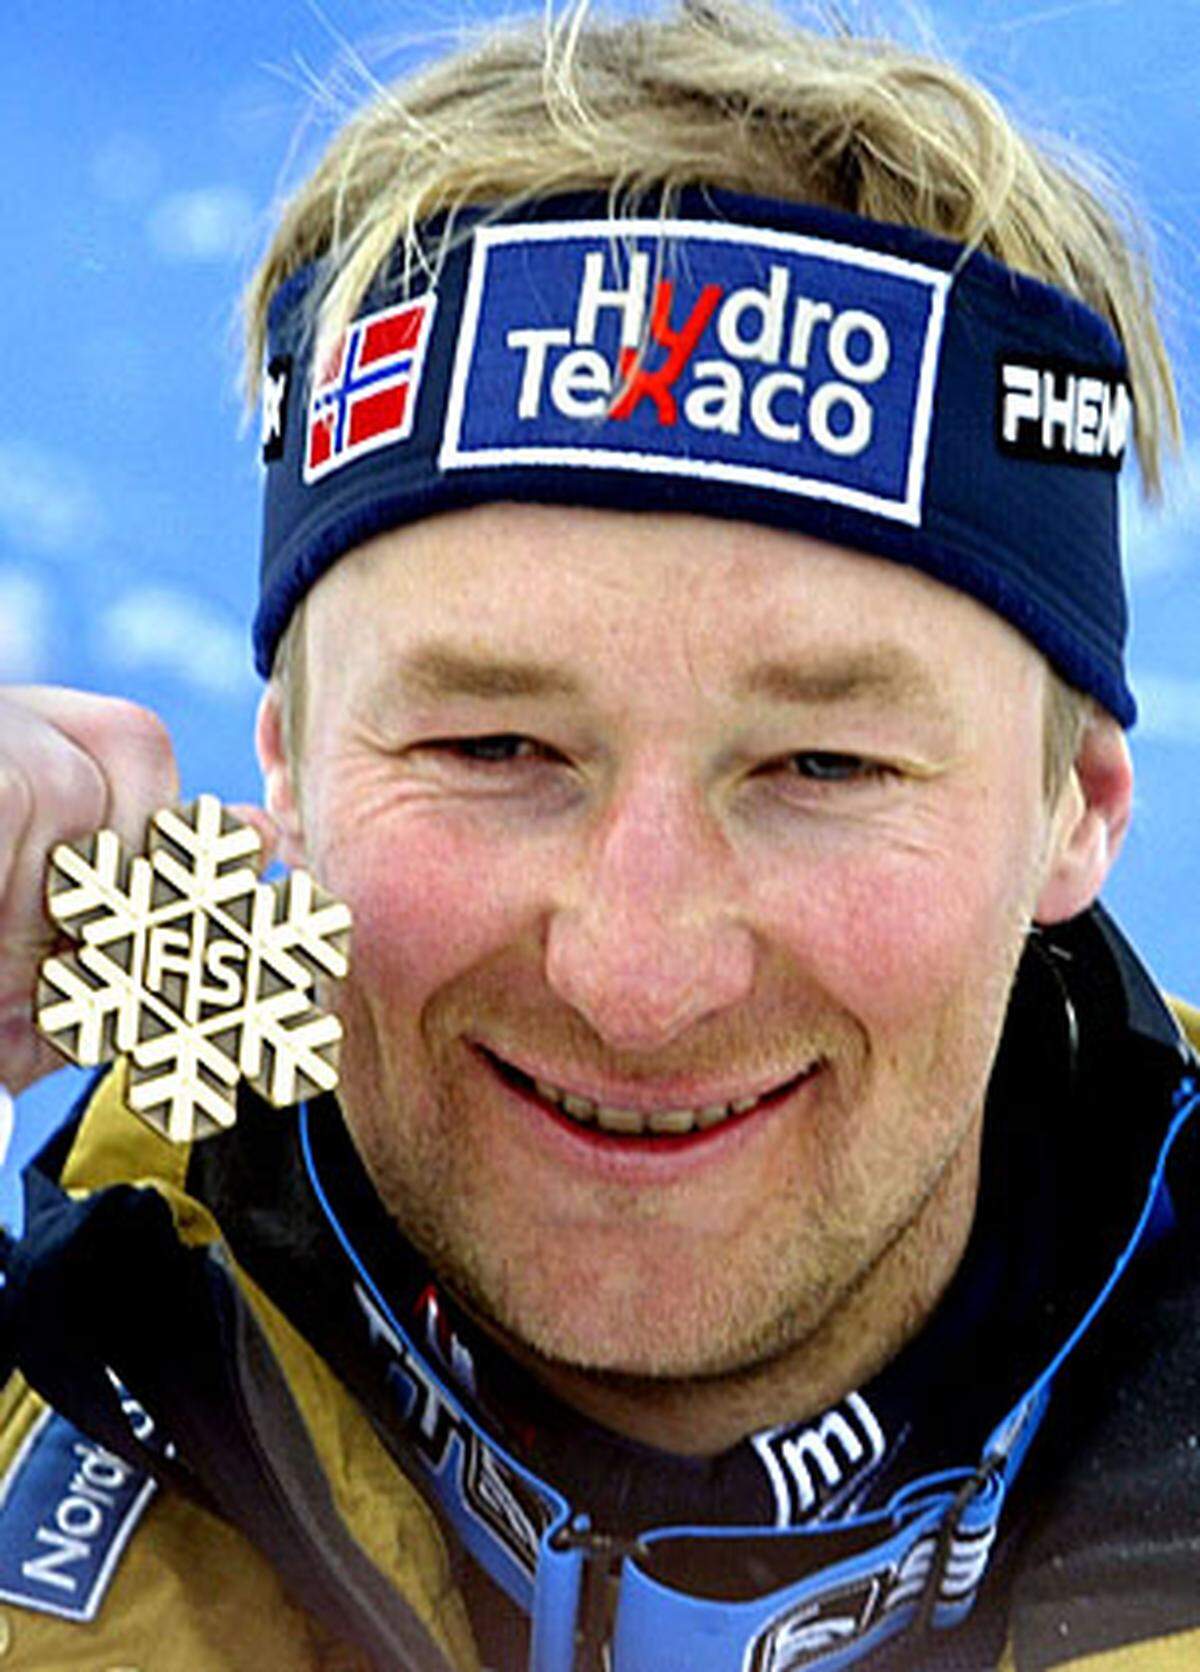 Der Norweger, der als einziger Rennläufer vier Olympia-Goldmedaillen gewinnen konnte, holte bei Weltmeisterschaften unglaubliche zwölf Medaillen: fünf in Gold, vier in Silber und drei in Bronze.